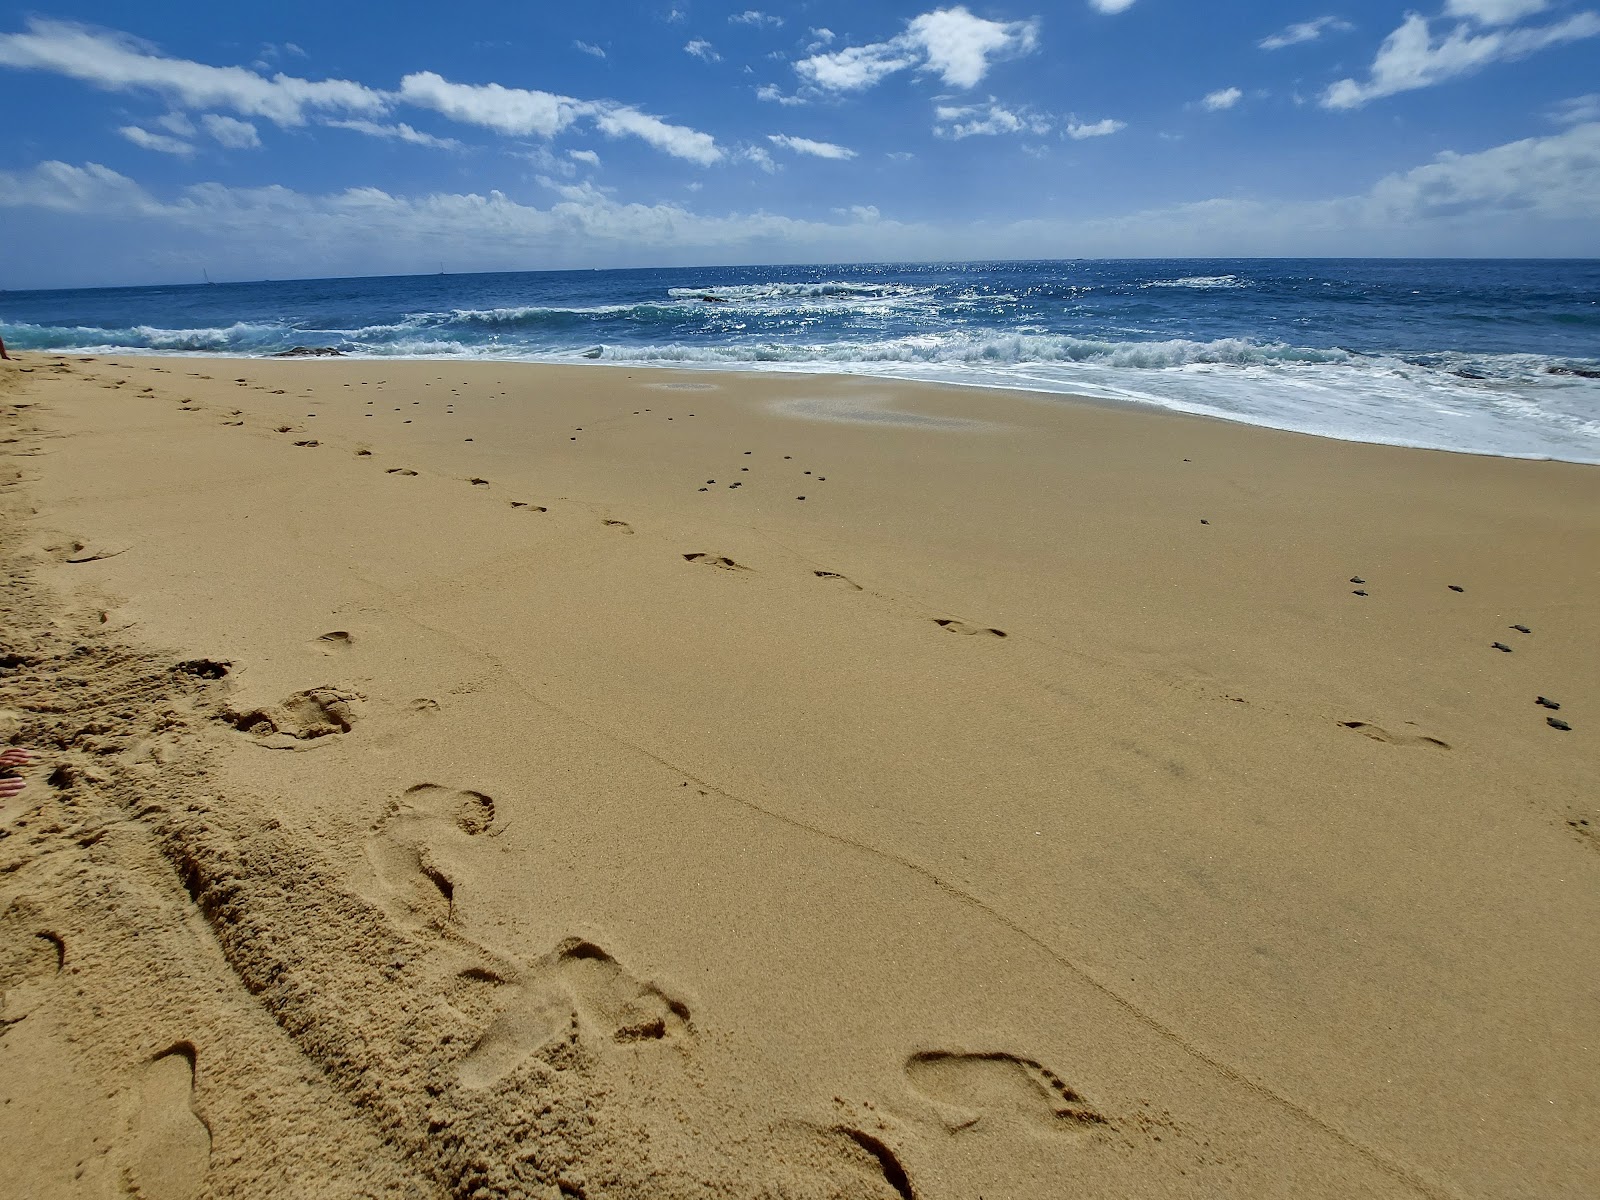 Zdjęcie Playa Sheraton los Cabos - popularne miejsce wśród znawców relaksu